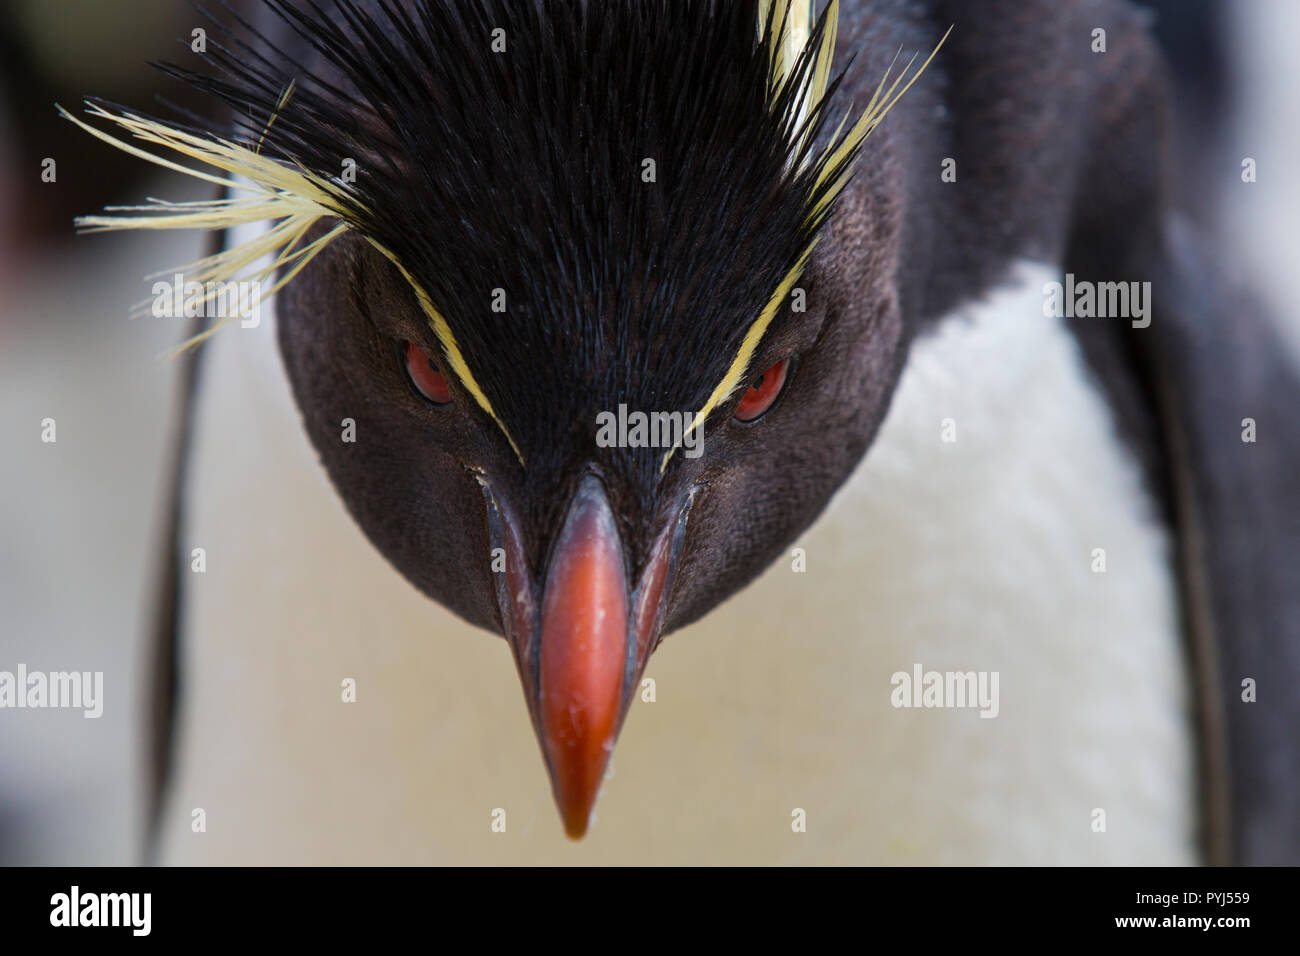 Pinguino saltaroccia colonia, nuova isola, Isole Falkland. Foto Stock